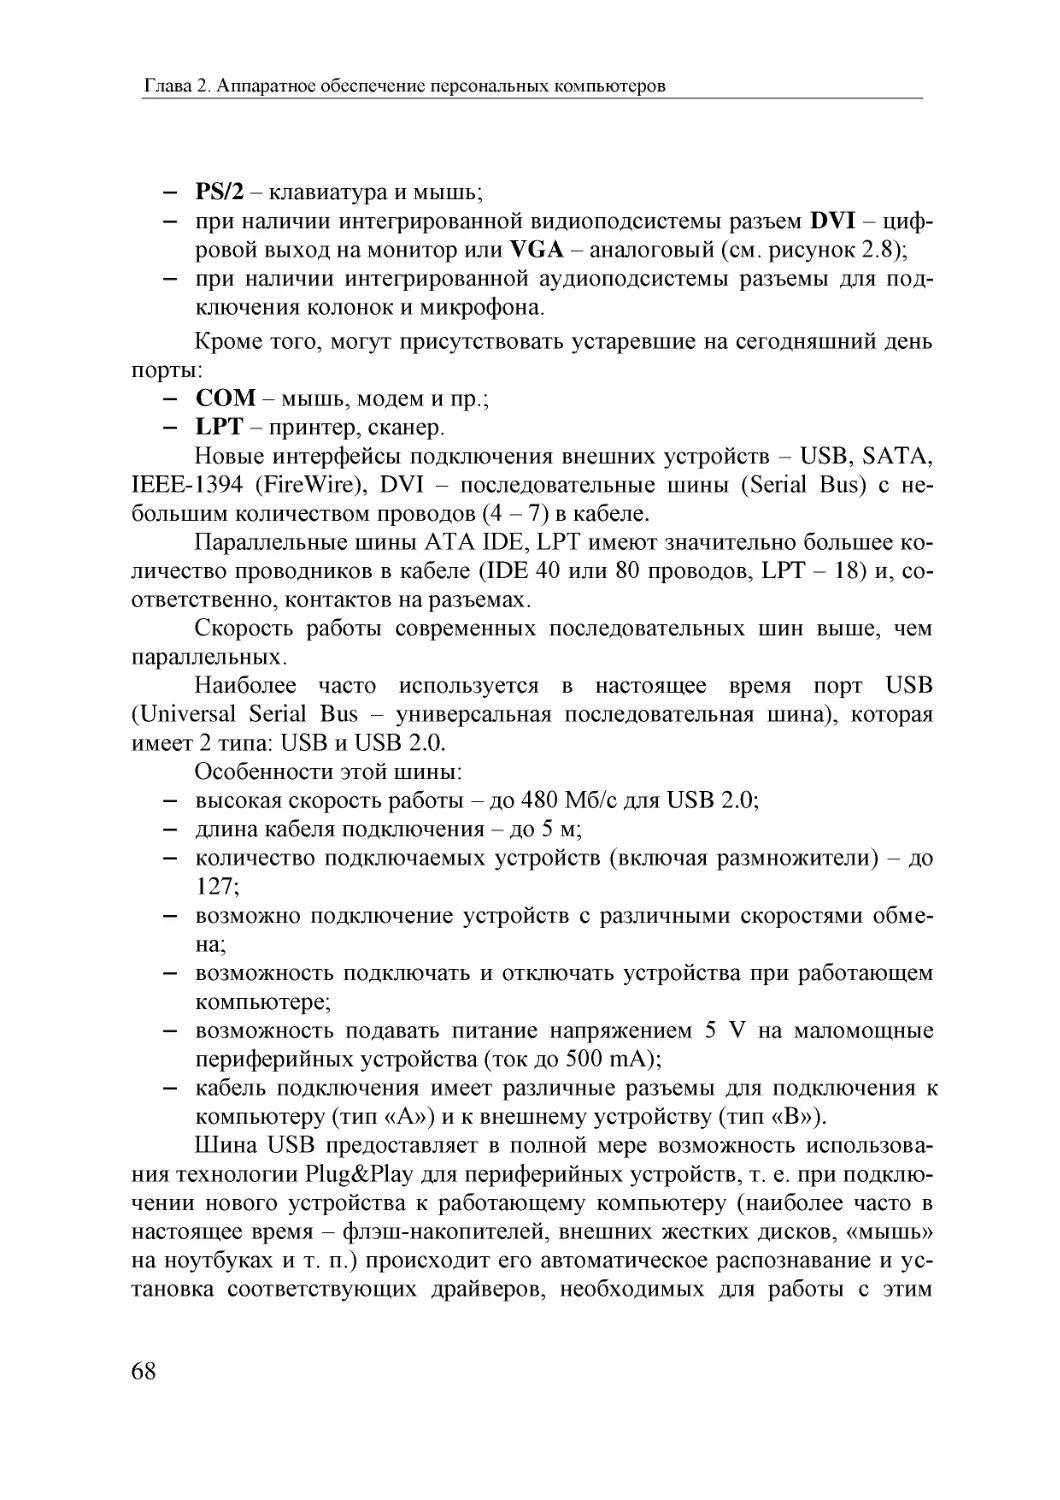 Informatika_Uchebnik_dlya_vuzov_2010 68